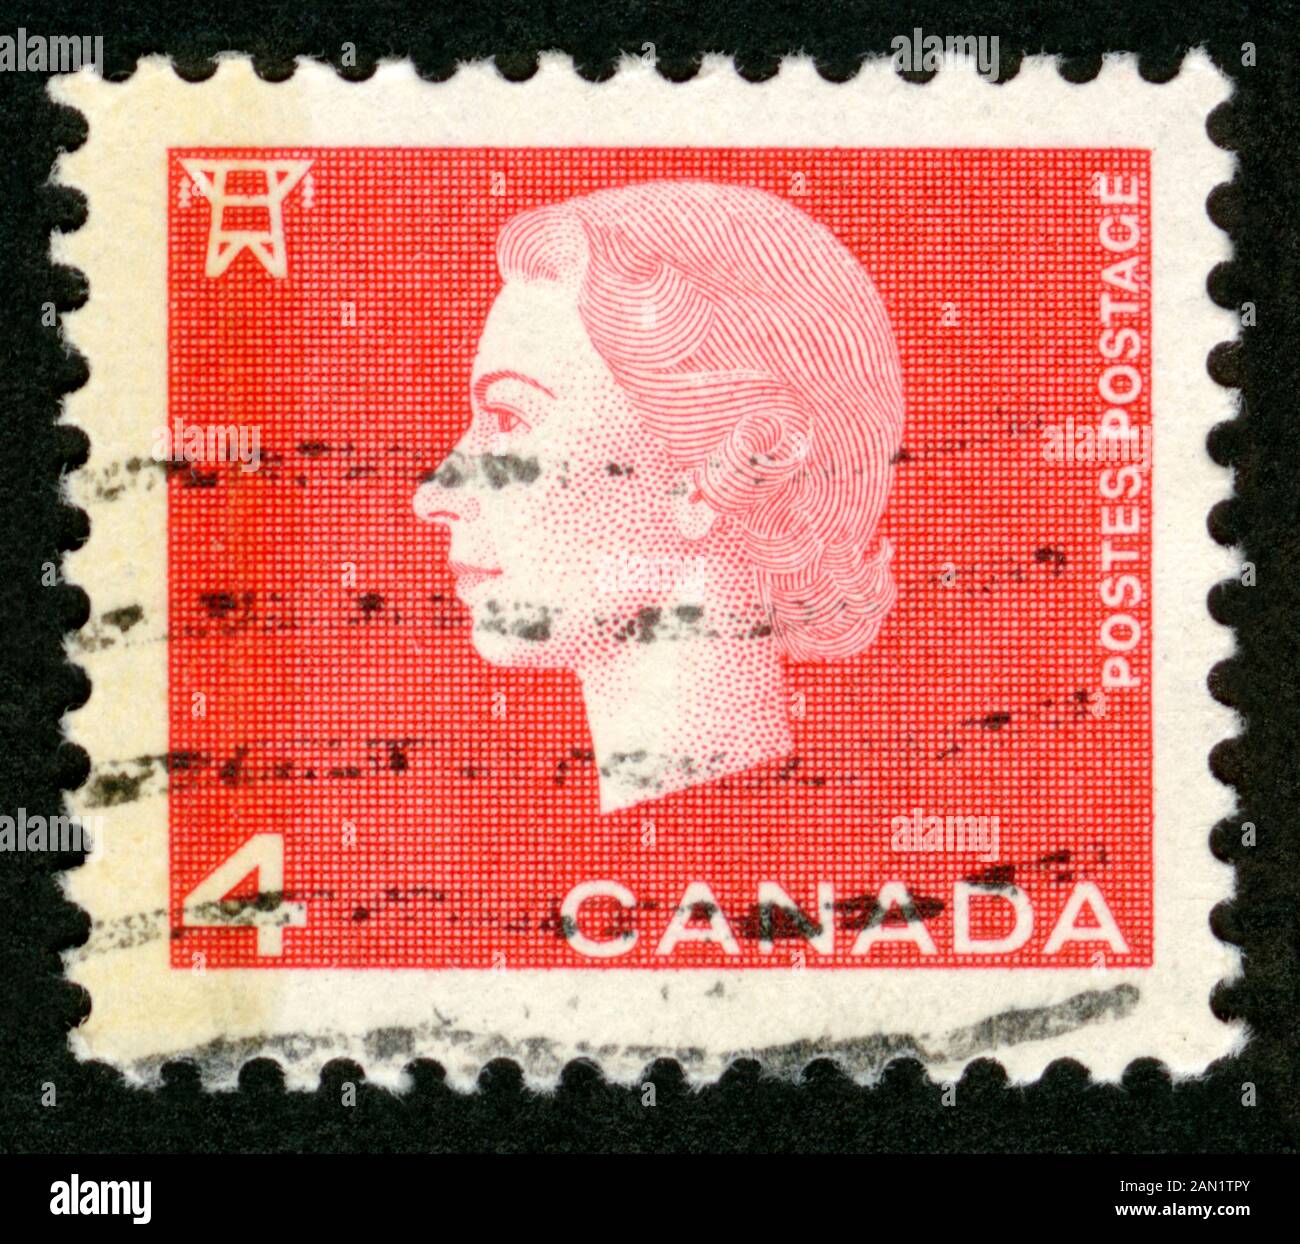 Stampa del timbro in Canada, la Regina Elisabetta II Foto Stock